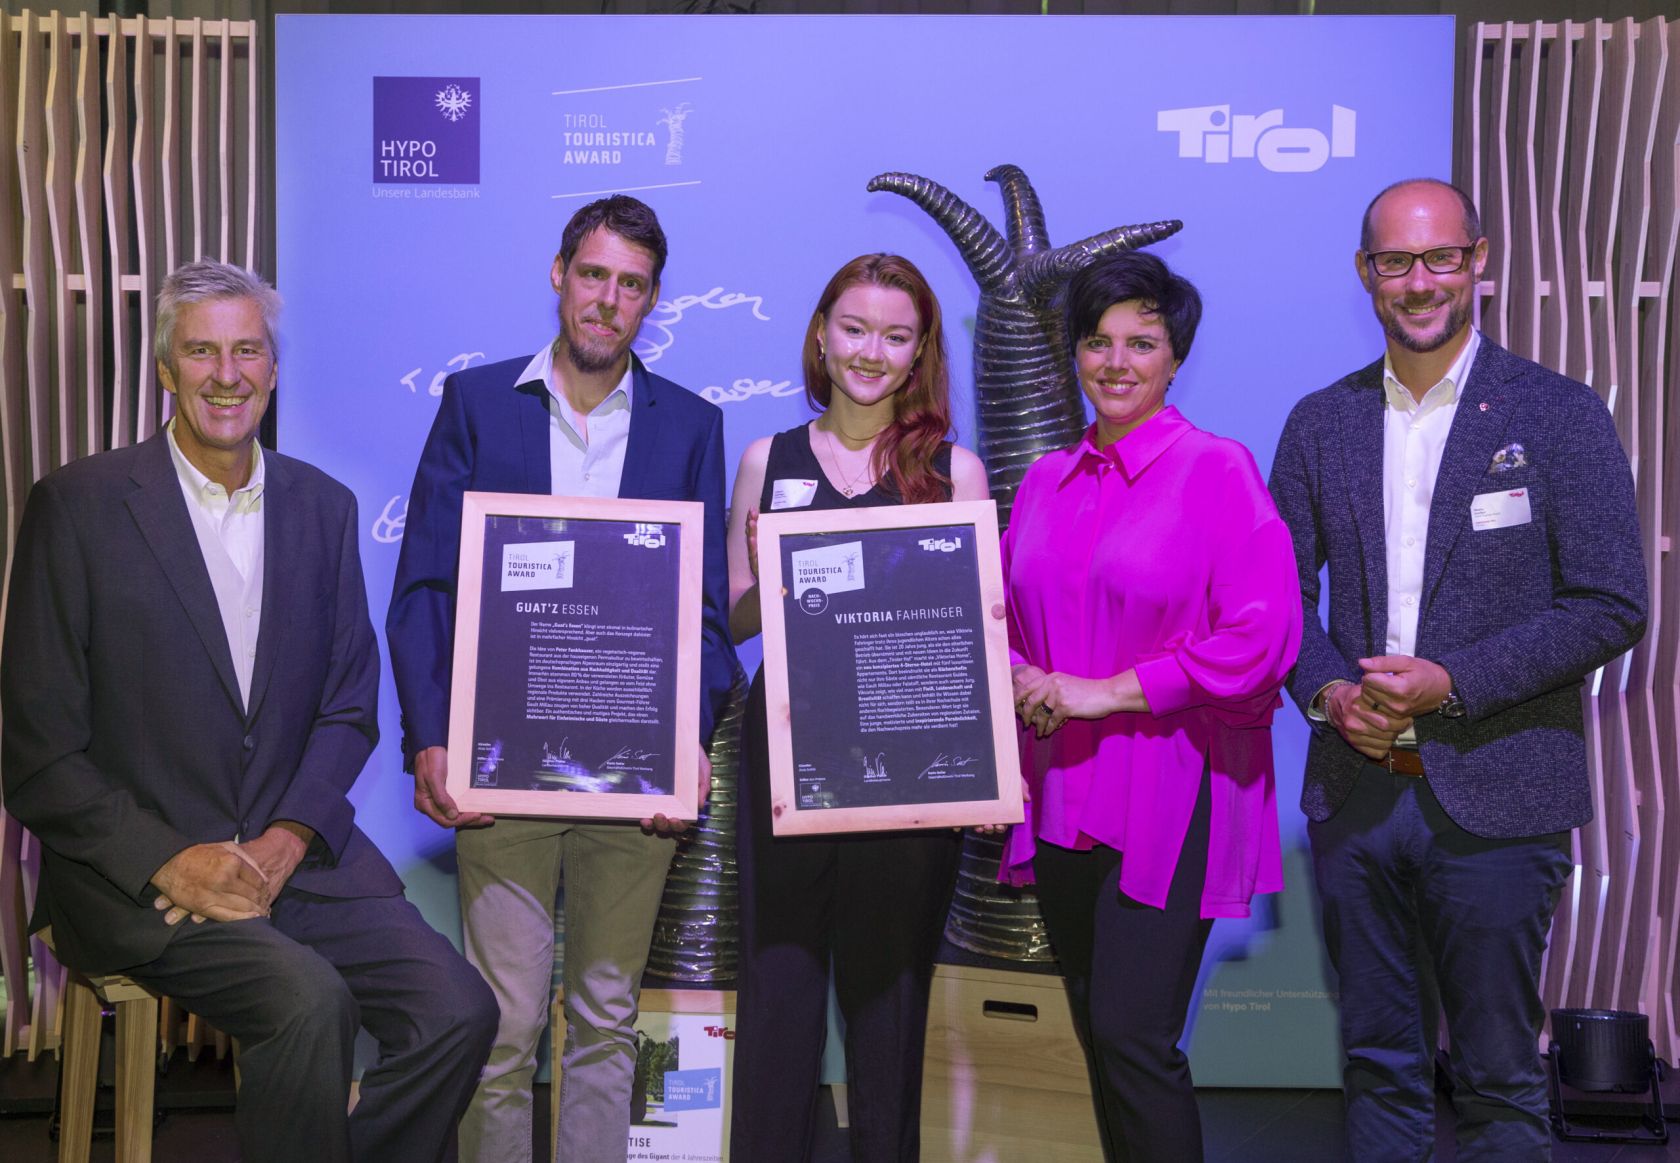 "Wir sind Gewinner des Tirol TOURISTICA Award 2022"